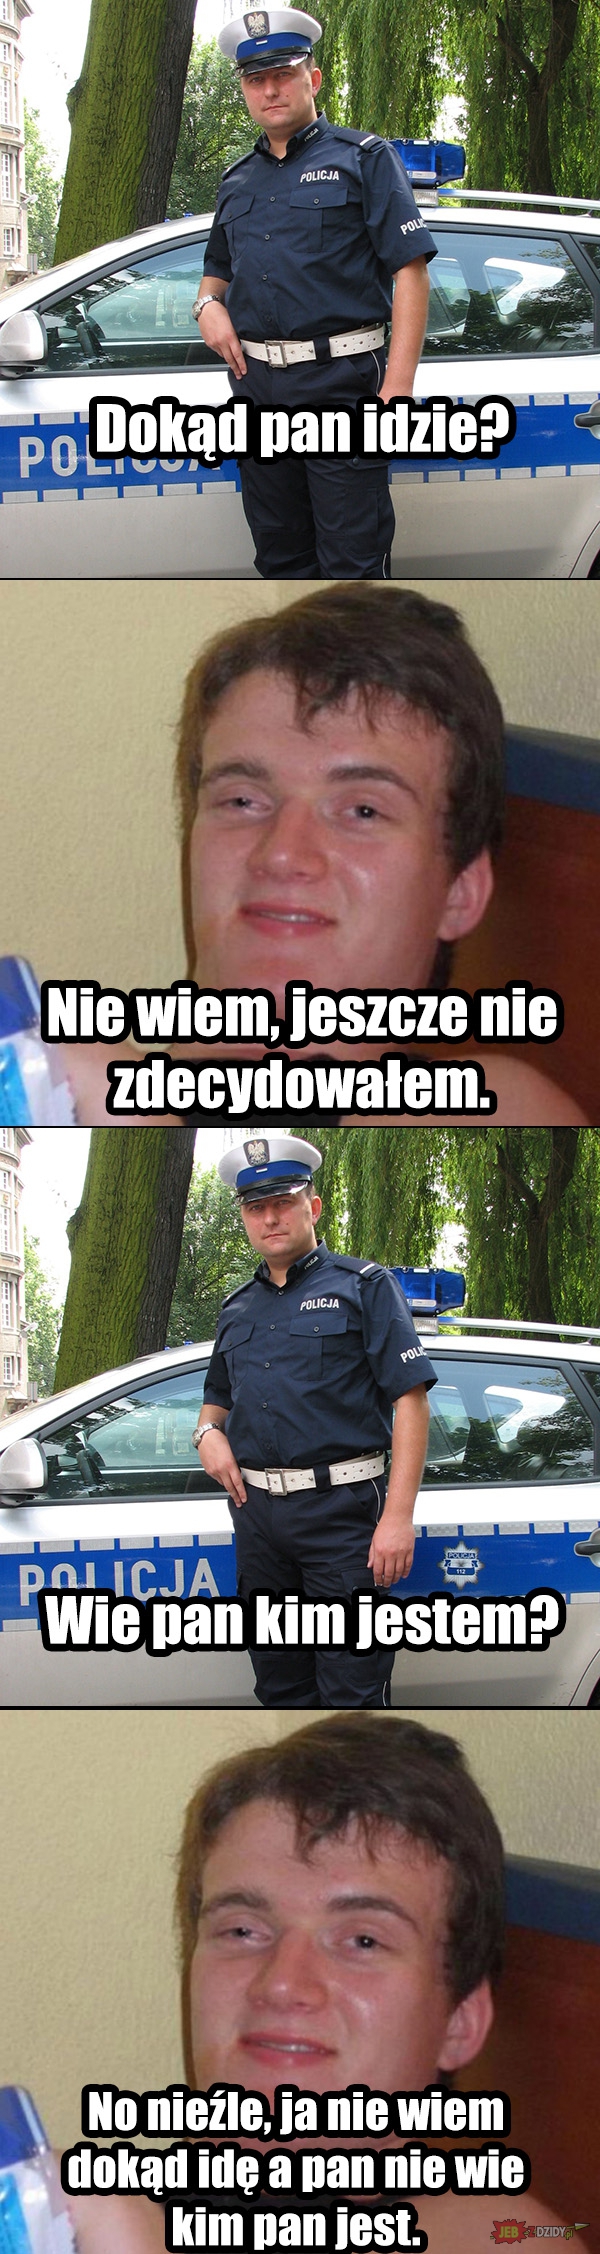 Rozmowa policjanta ze zjaranym Zbyszkiem Obrazki   